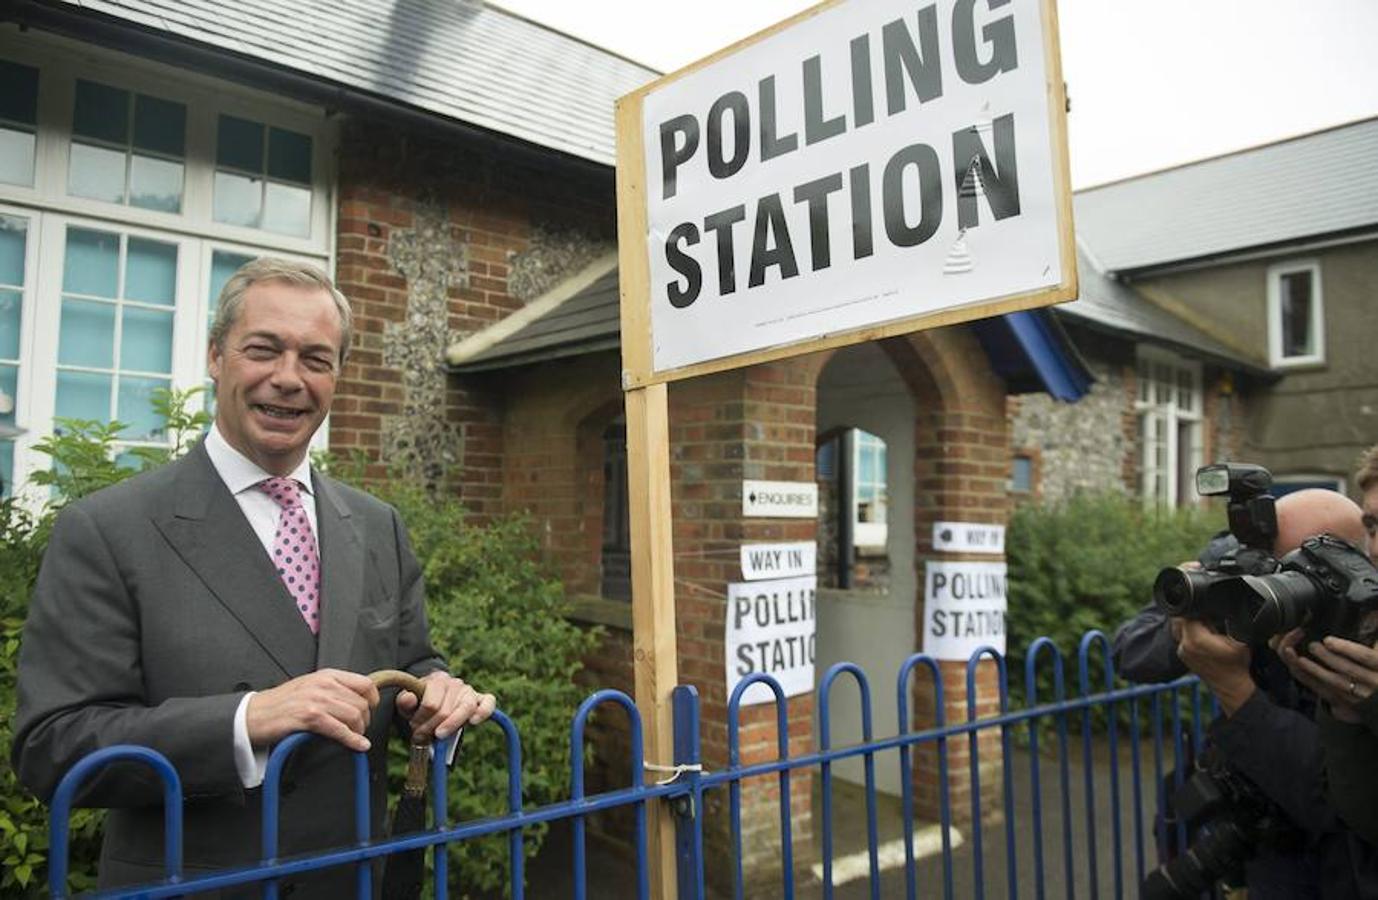 El líder del partido eurófobo UKIP, Nigel Farage, llega a un colegio electoral para ejercer su voto